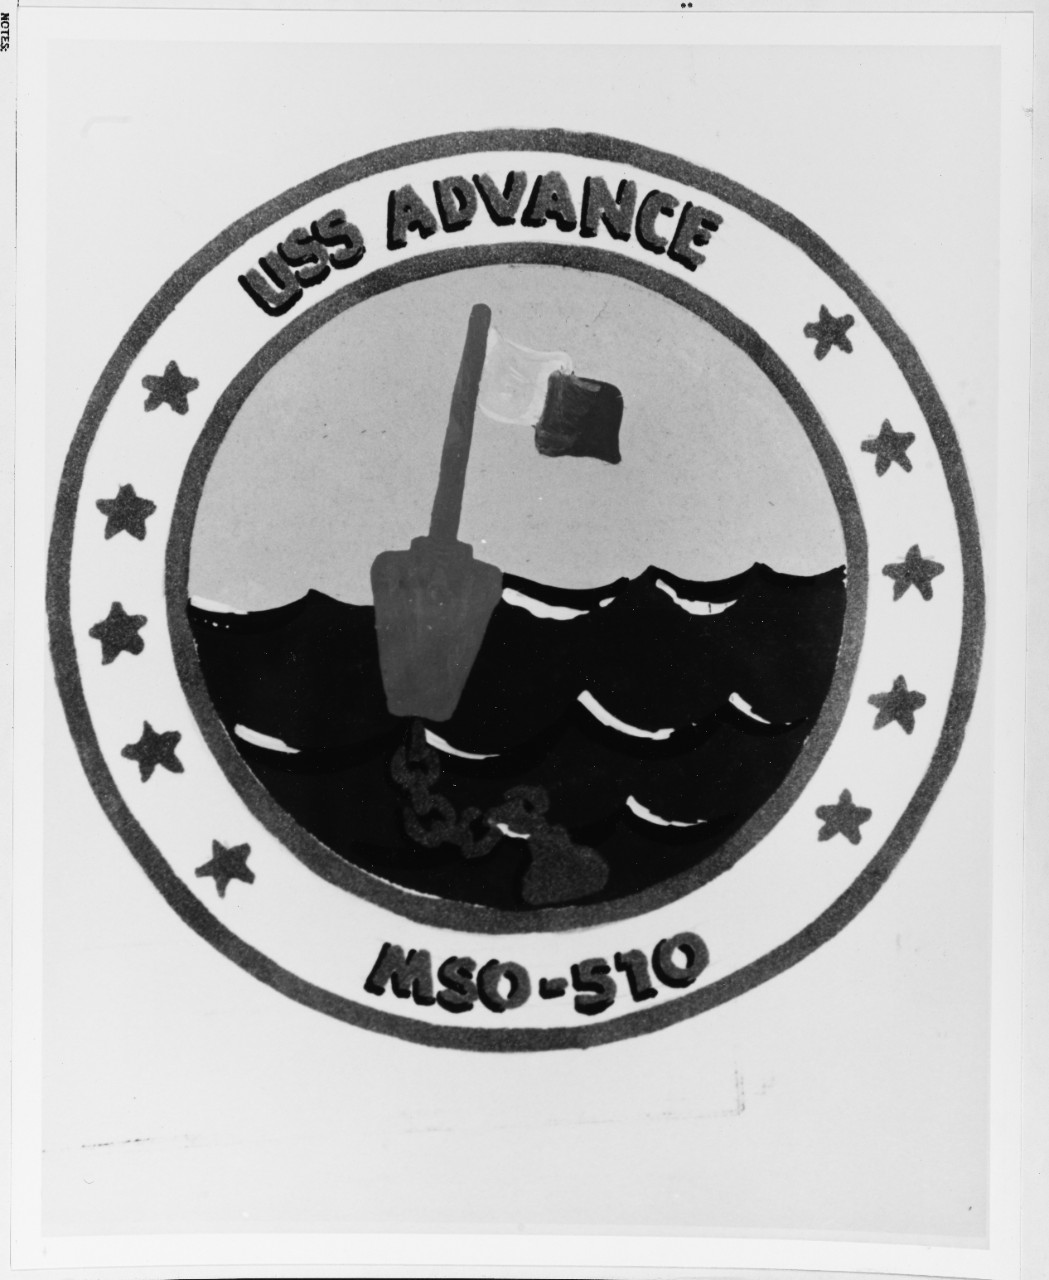 Insignia: USS ADVANCE (MSO-510)